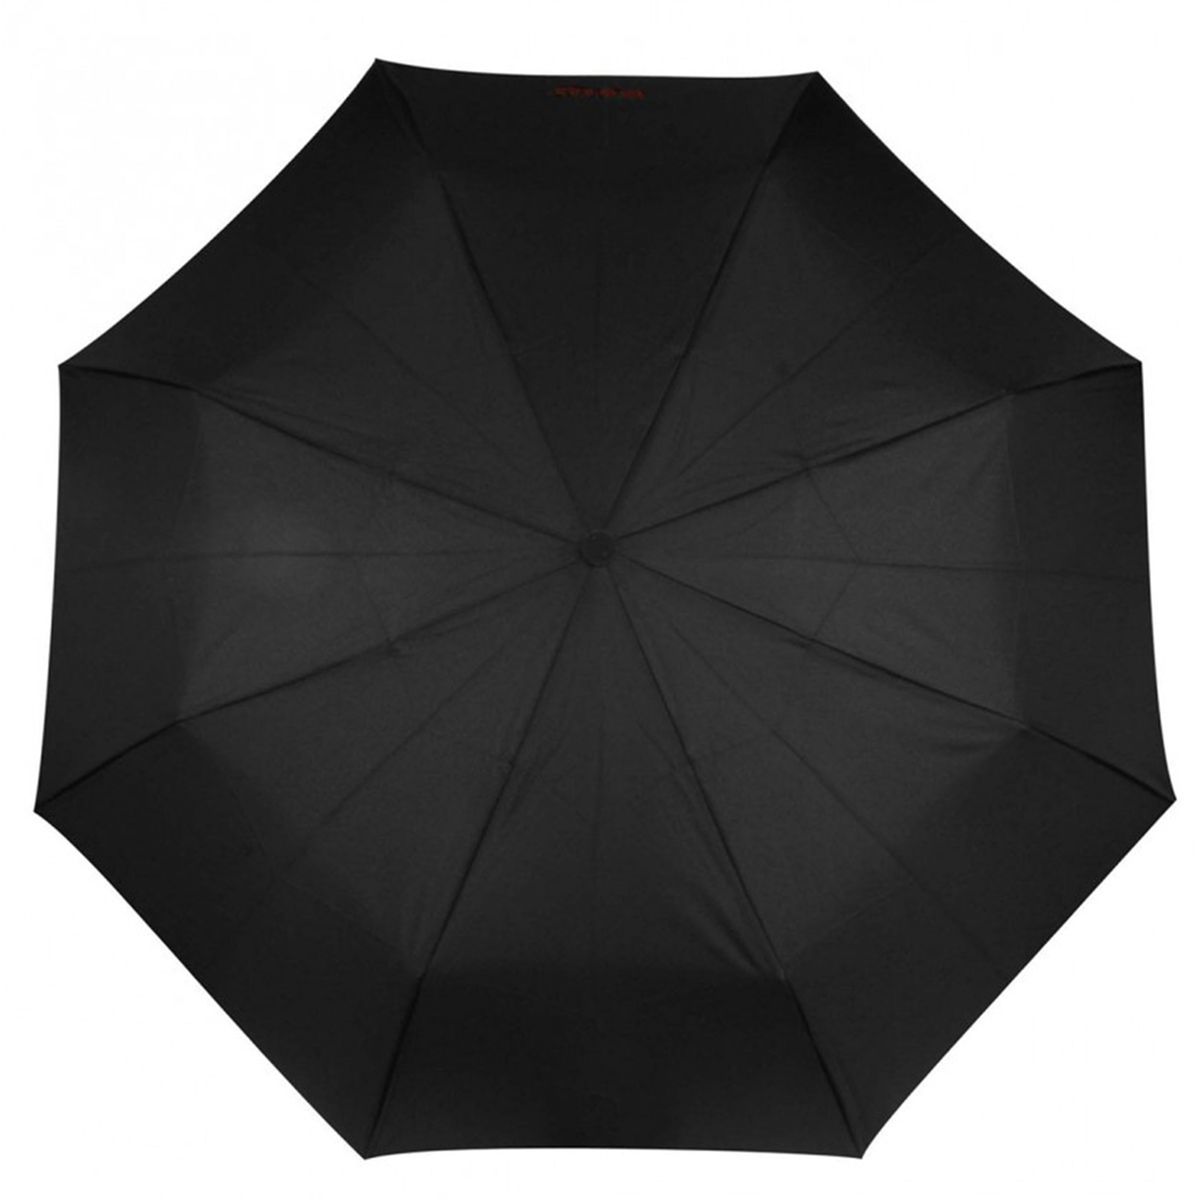 Femme Accessoires Parapluies Parapluie canne poignée gomme Parapluies Isotoner en coloris Noir 